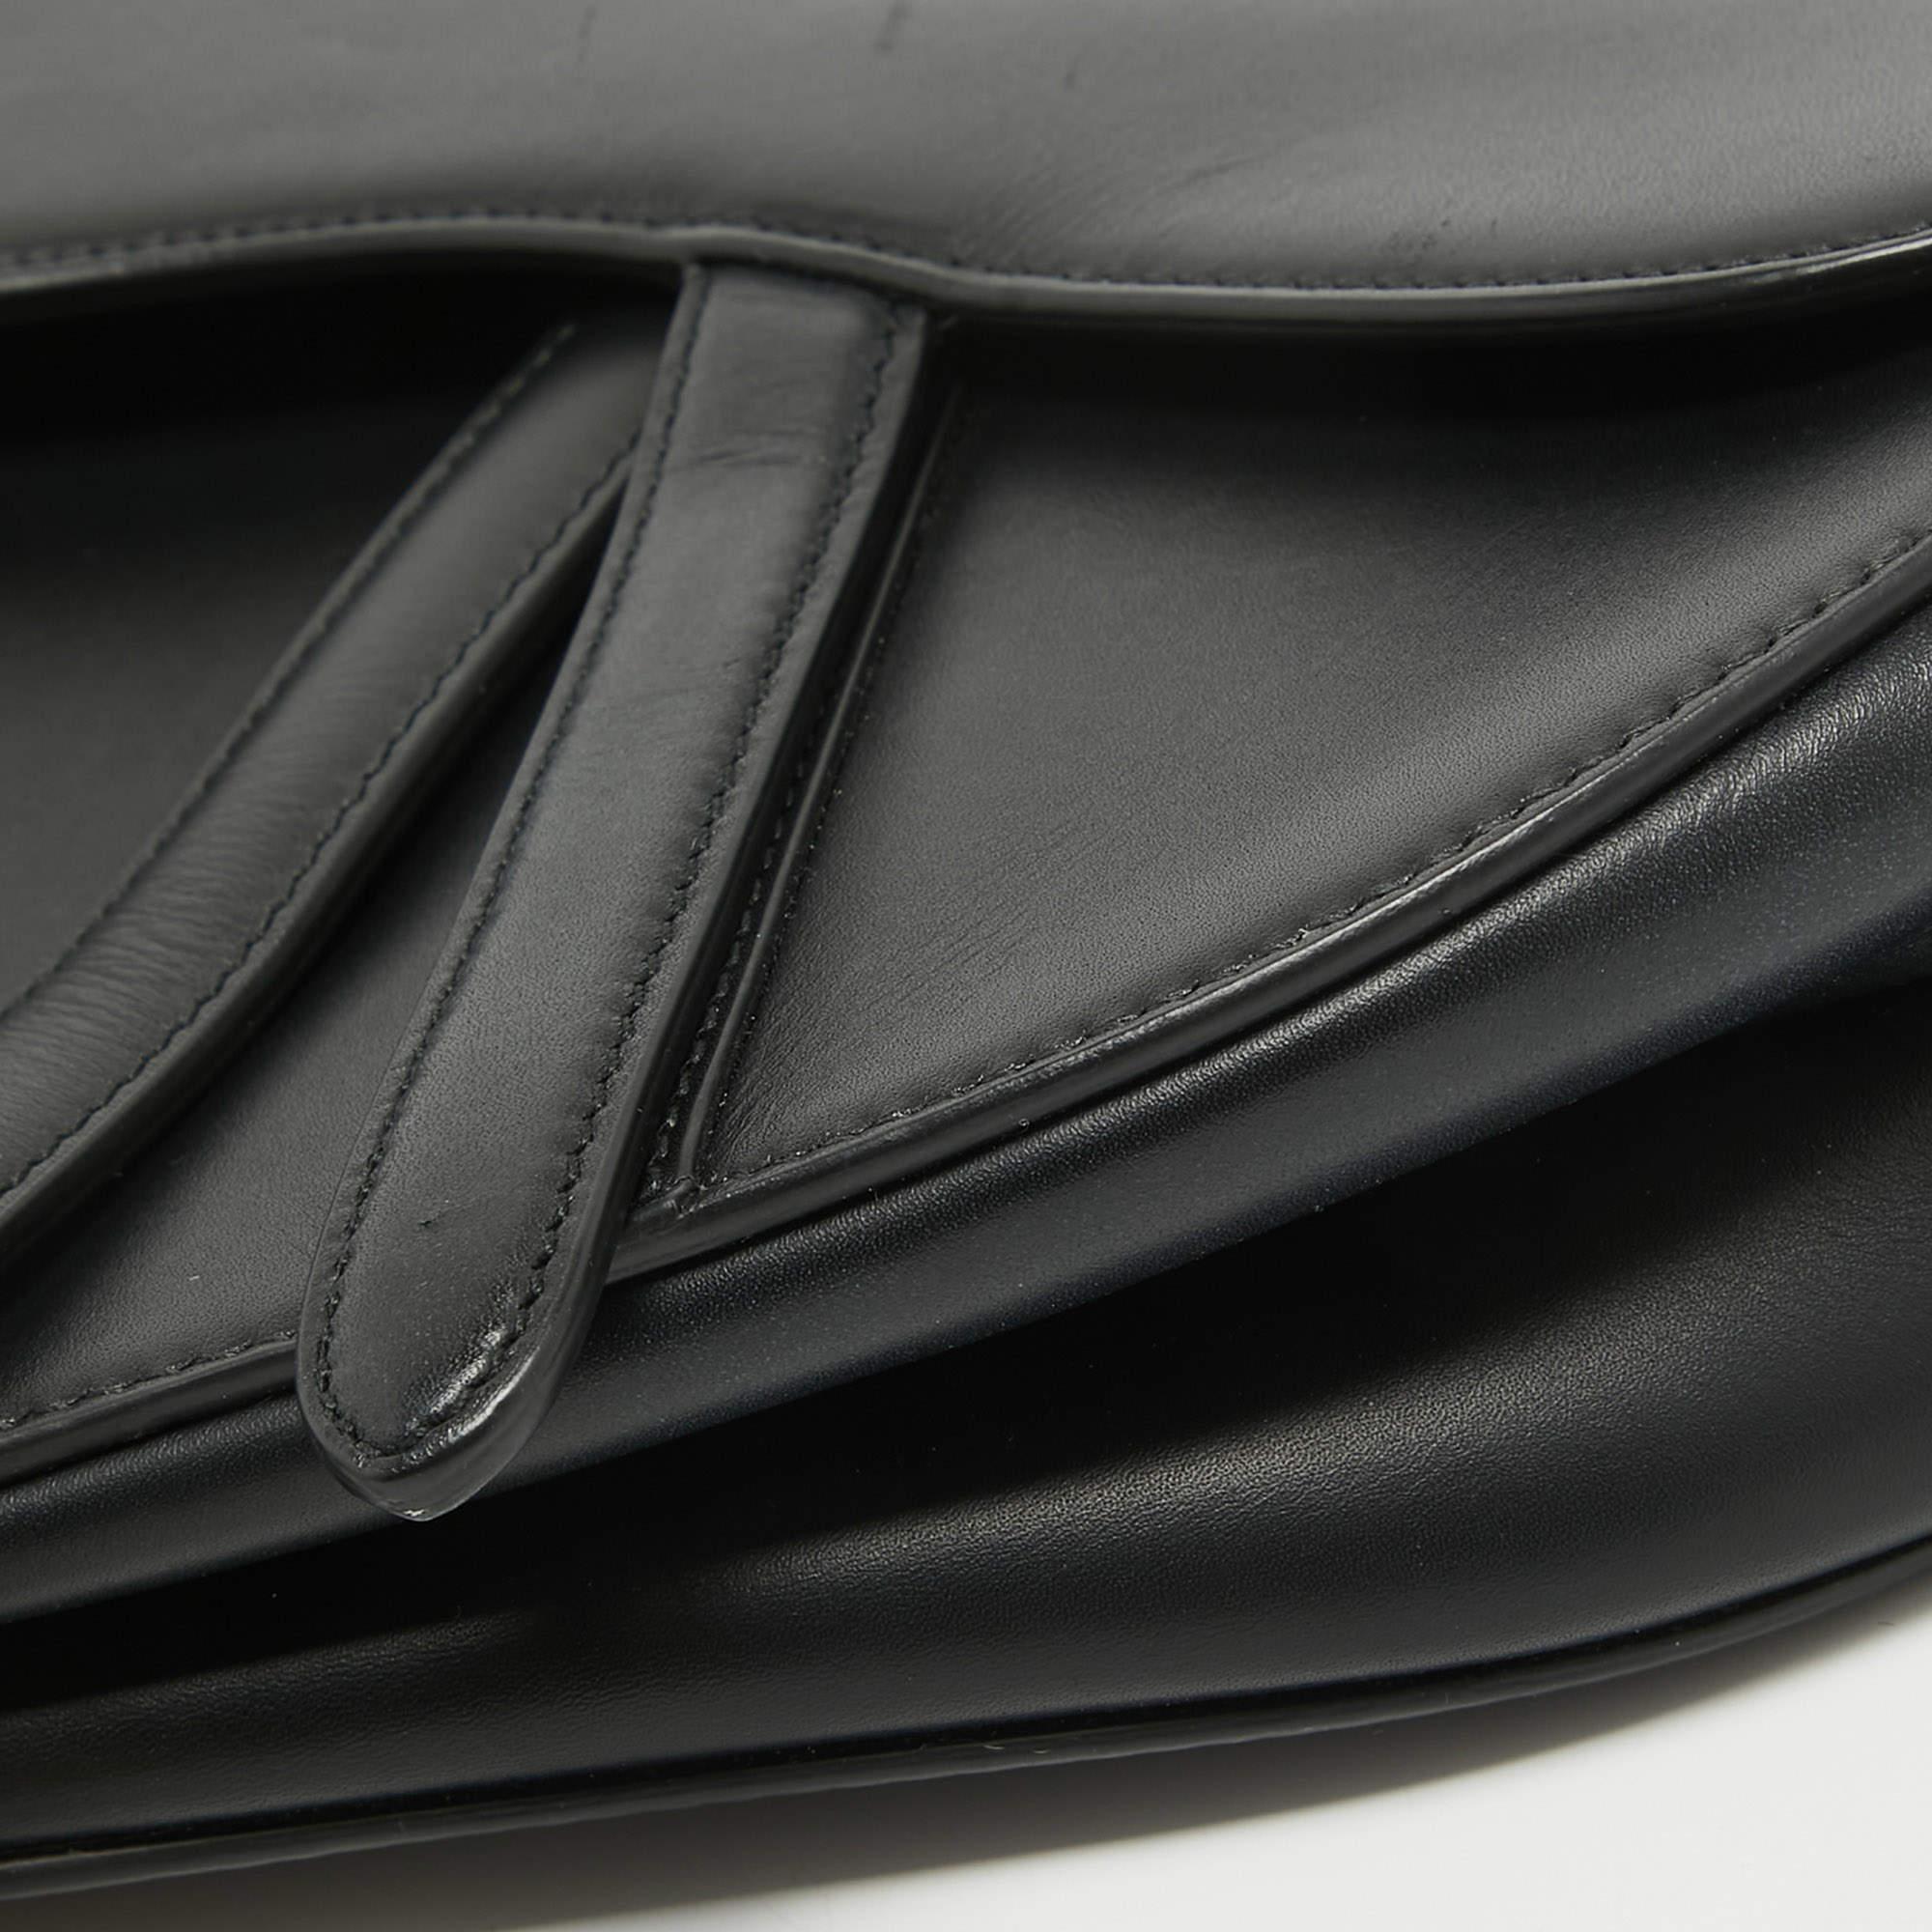 Dior Black Leather Saddle Bag For Sale 7